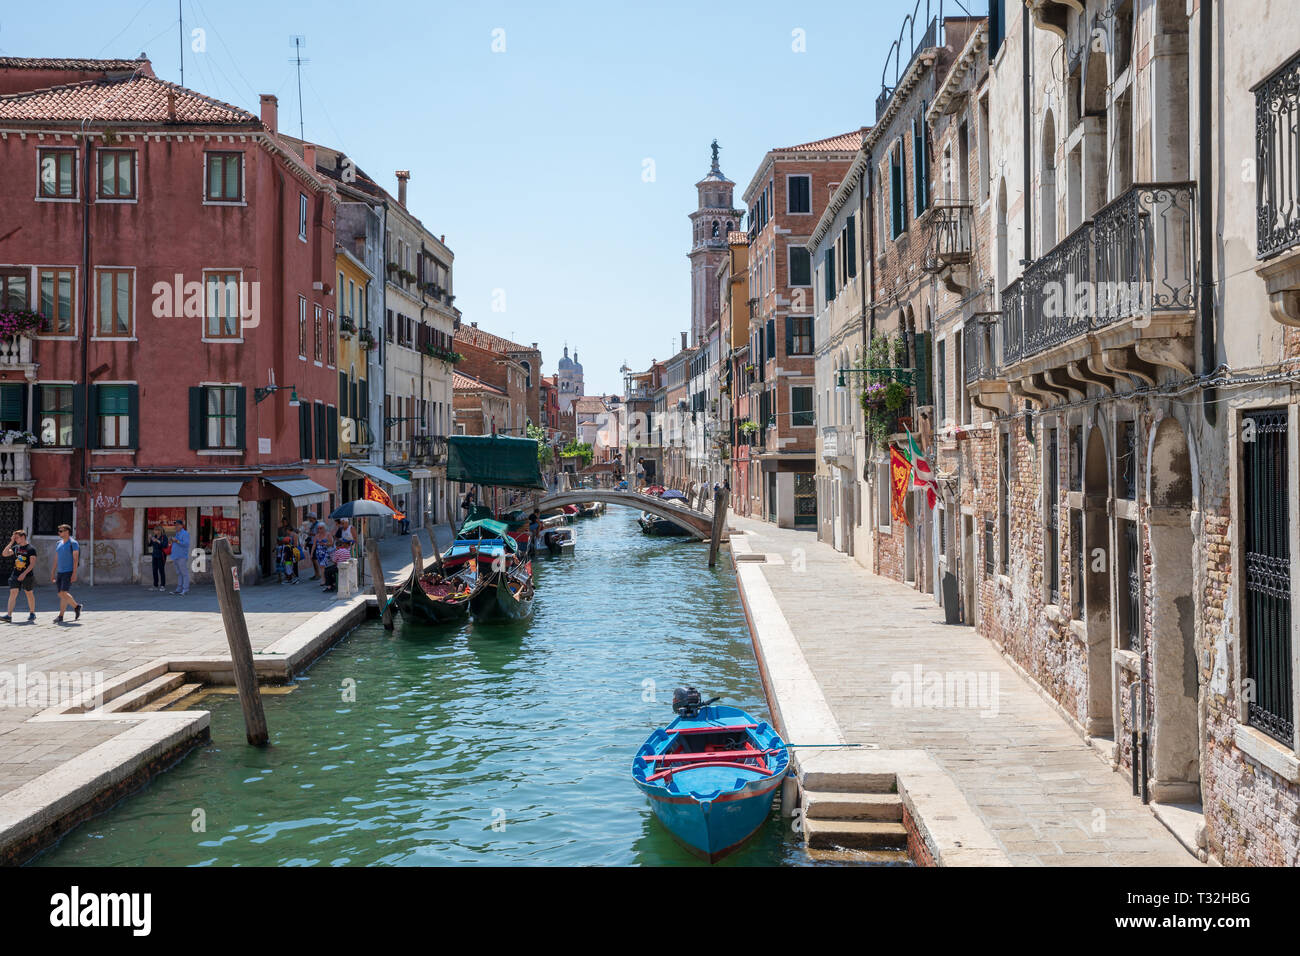 Venezia, Italia - Luglio 1, 2018: vista panoramica di Venezia stretto canale con edifici storici e barche da ponte. Le persone a rilassarsi e a piedi. Landsca Foto Stock